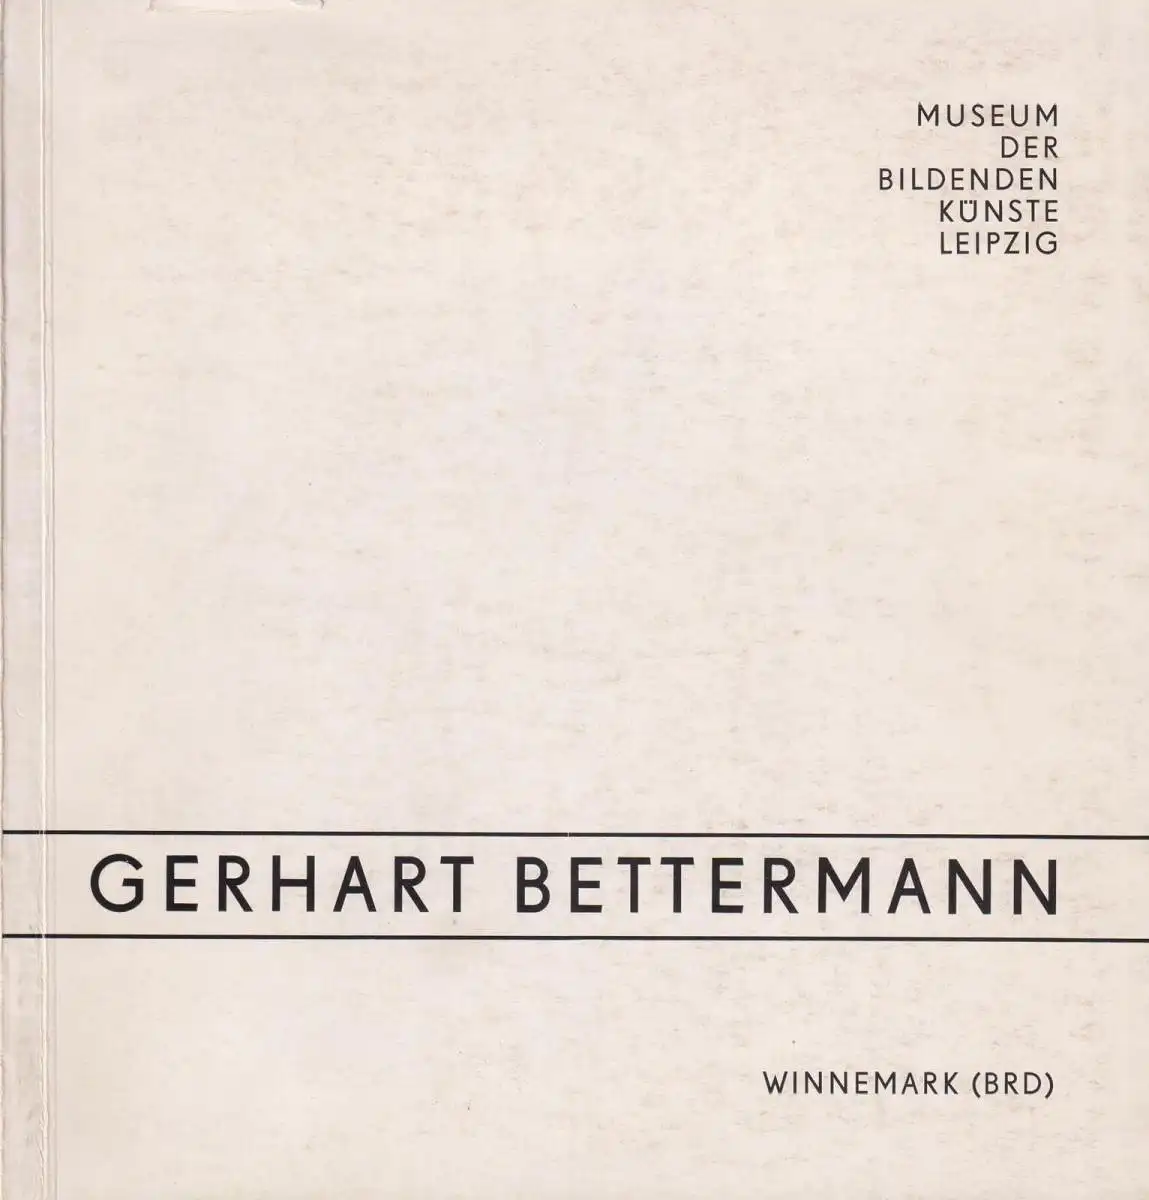 Buch: Gerhart Bettermann (BRD), 1980, Malerei und Graphik, sehr gut